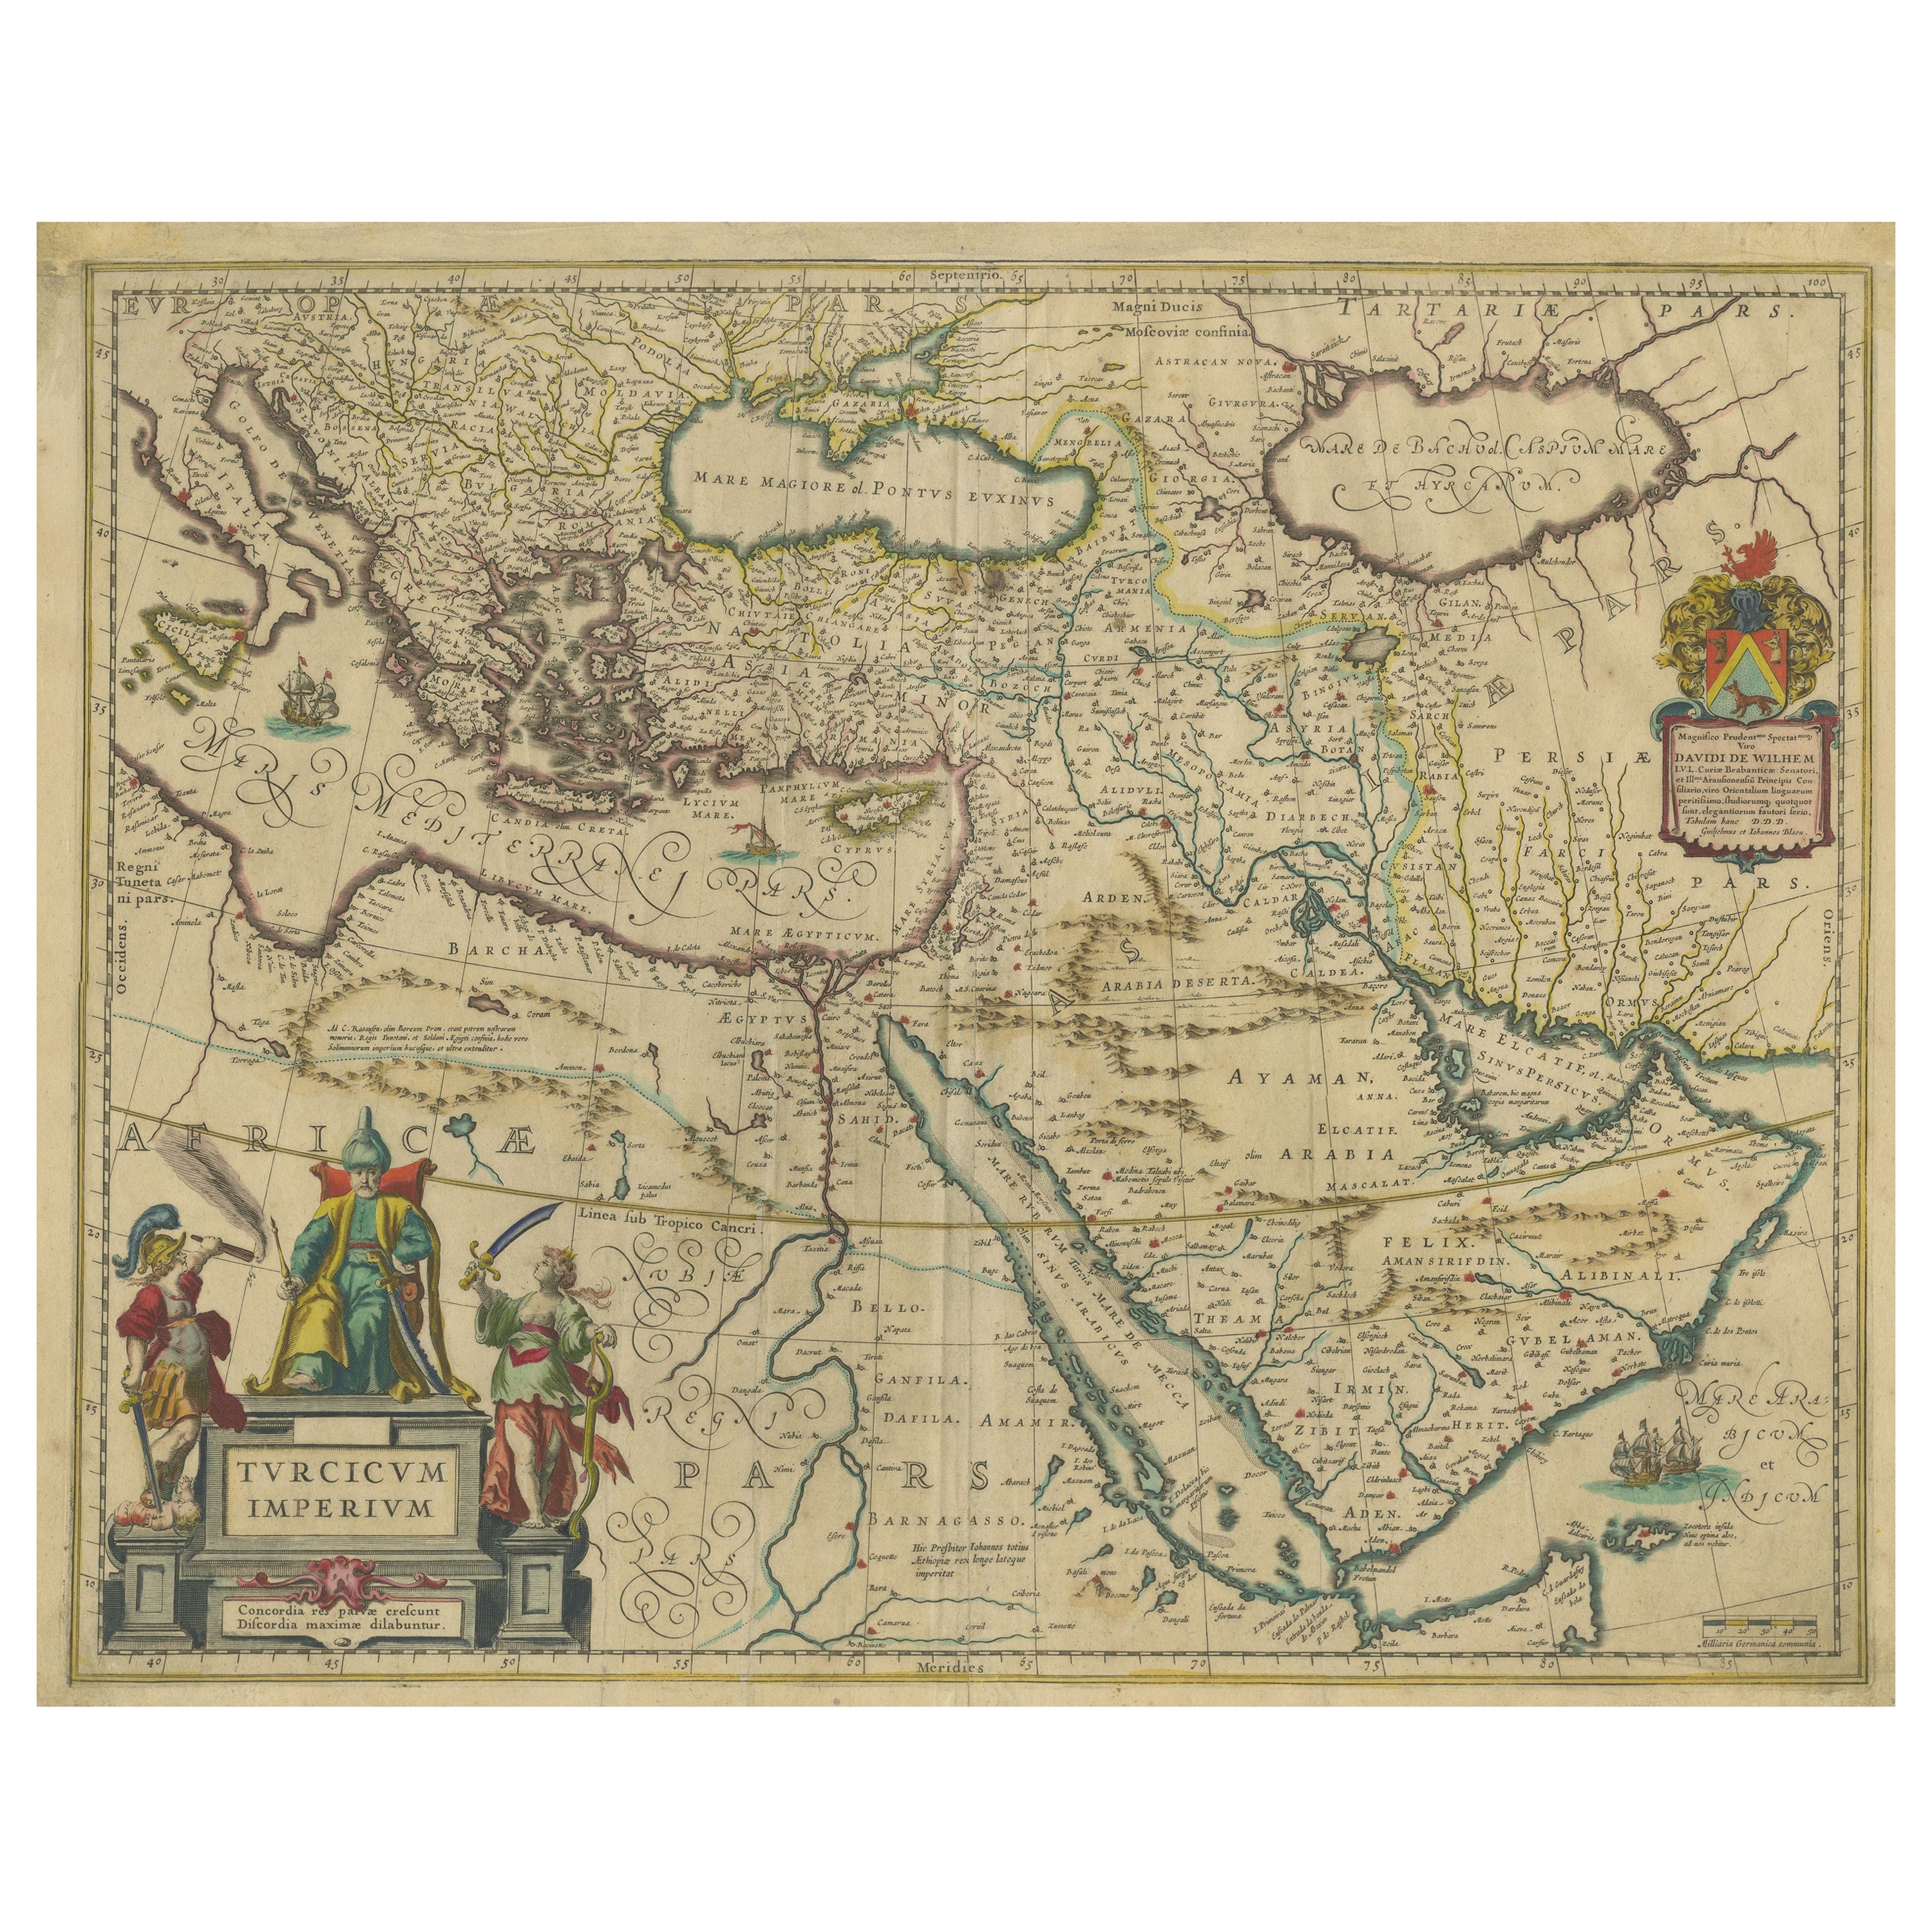 Splendeur impériale : Carte ancienne de l'Empire Antique par Blaeu, vers 1640